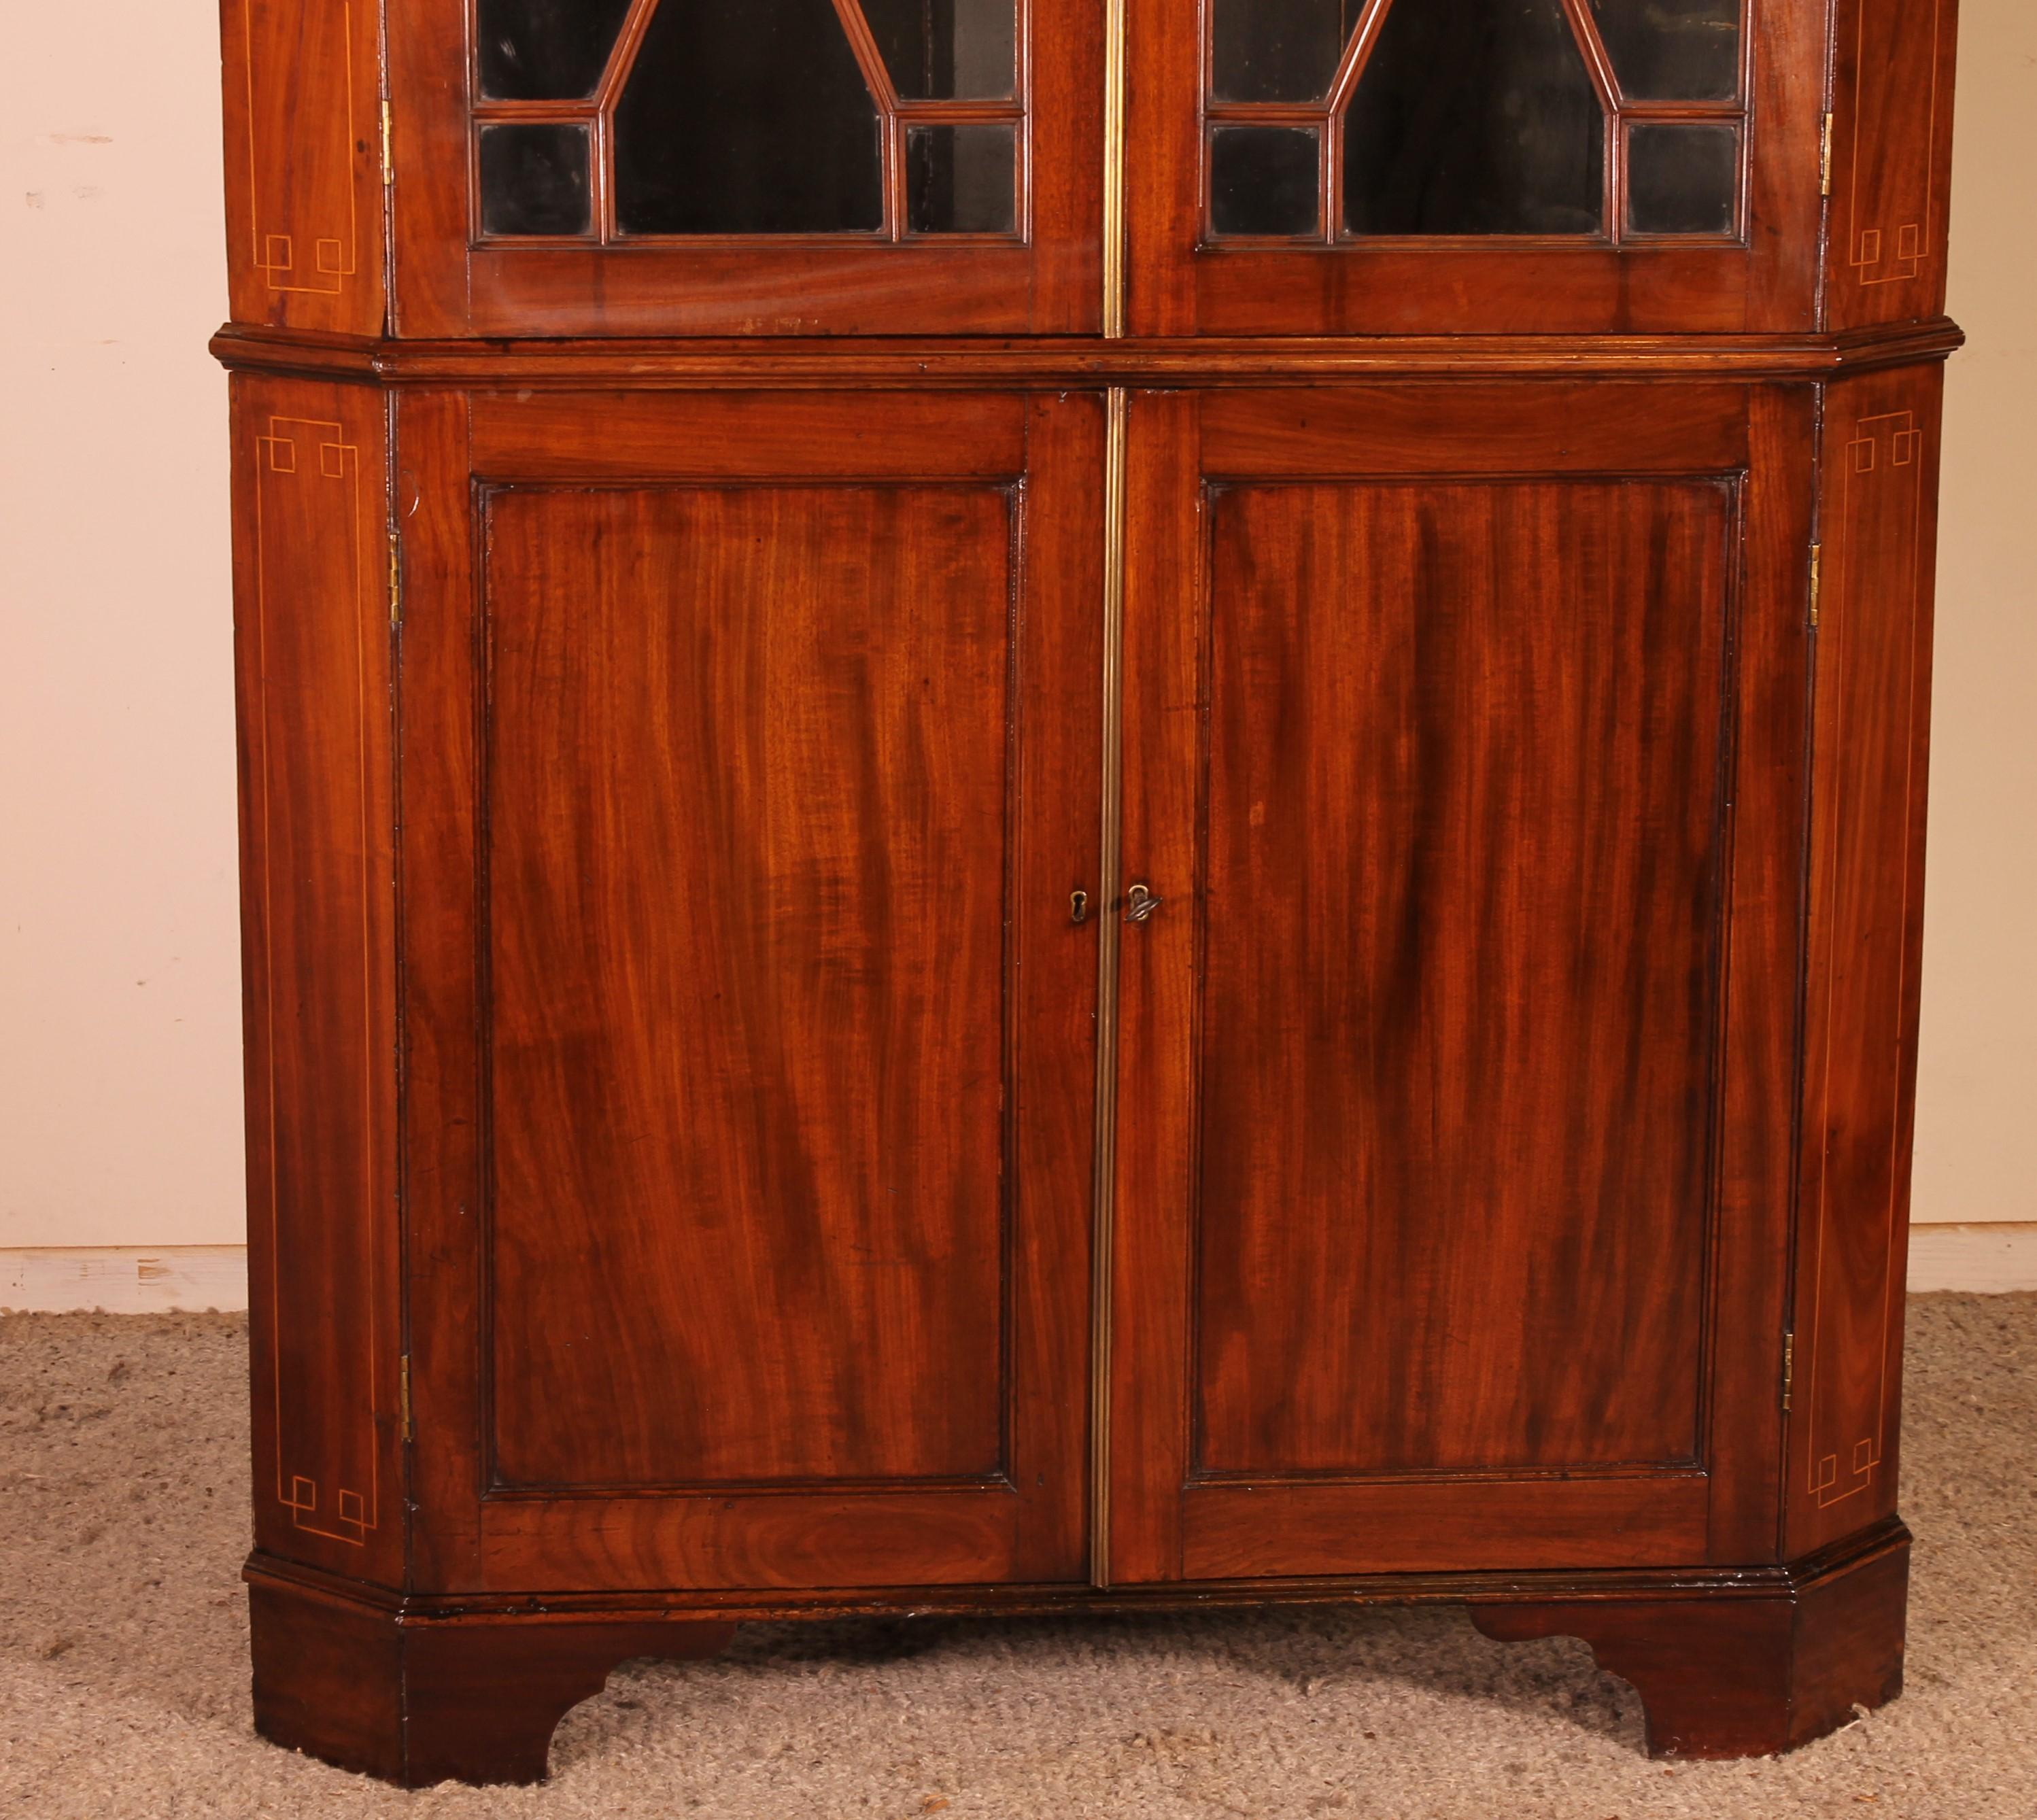 Eleganter englischer Mahagoni-Eckschrank aus dem 18. Jahrhundert

Eckschrank von sehr guter Qualität mit verstrebten Fenstern. Seine Originalfenster sind noch intakt.

Sehr elegantes, zweiteiliges Modell mit einer ungewöhnlichen